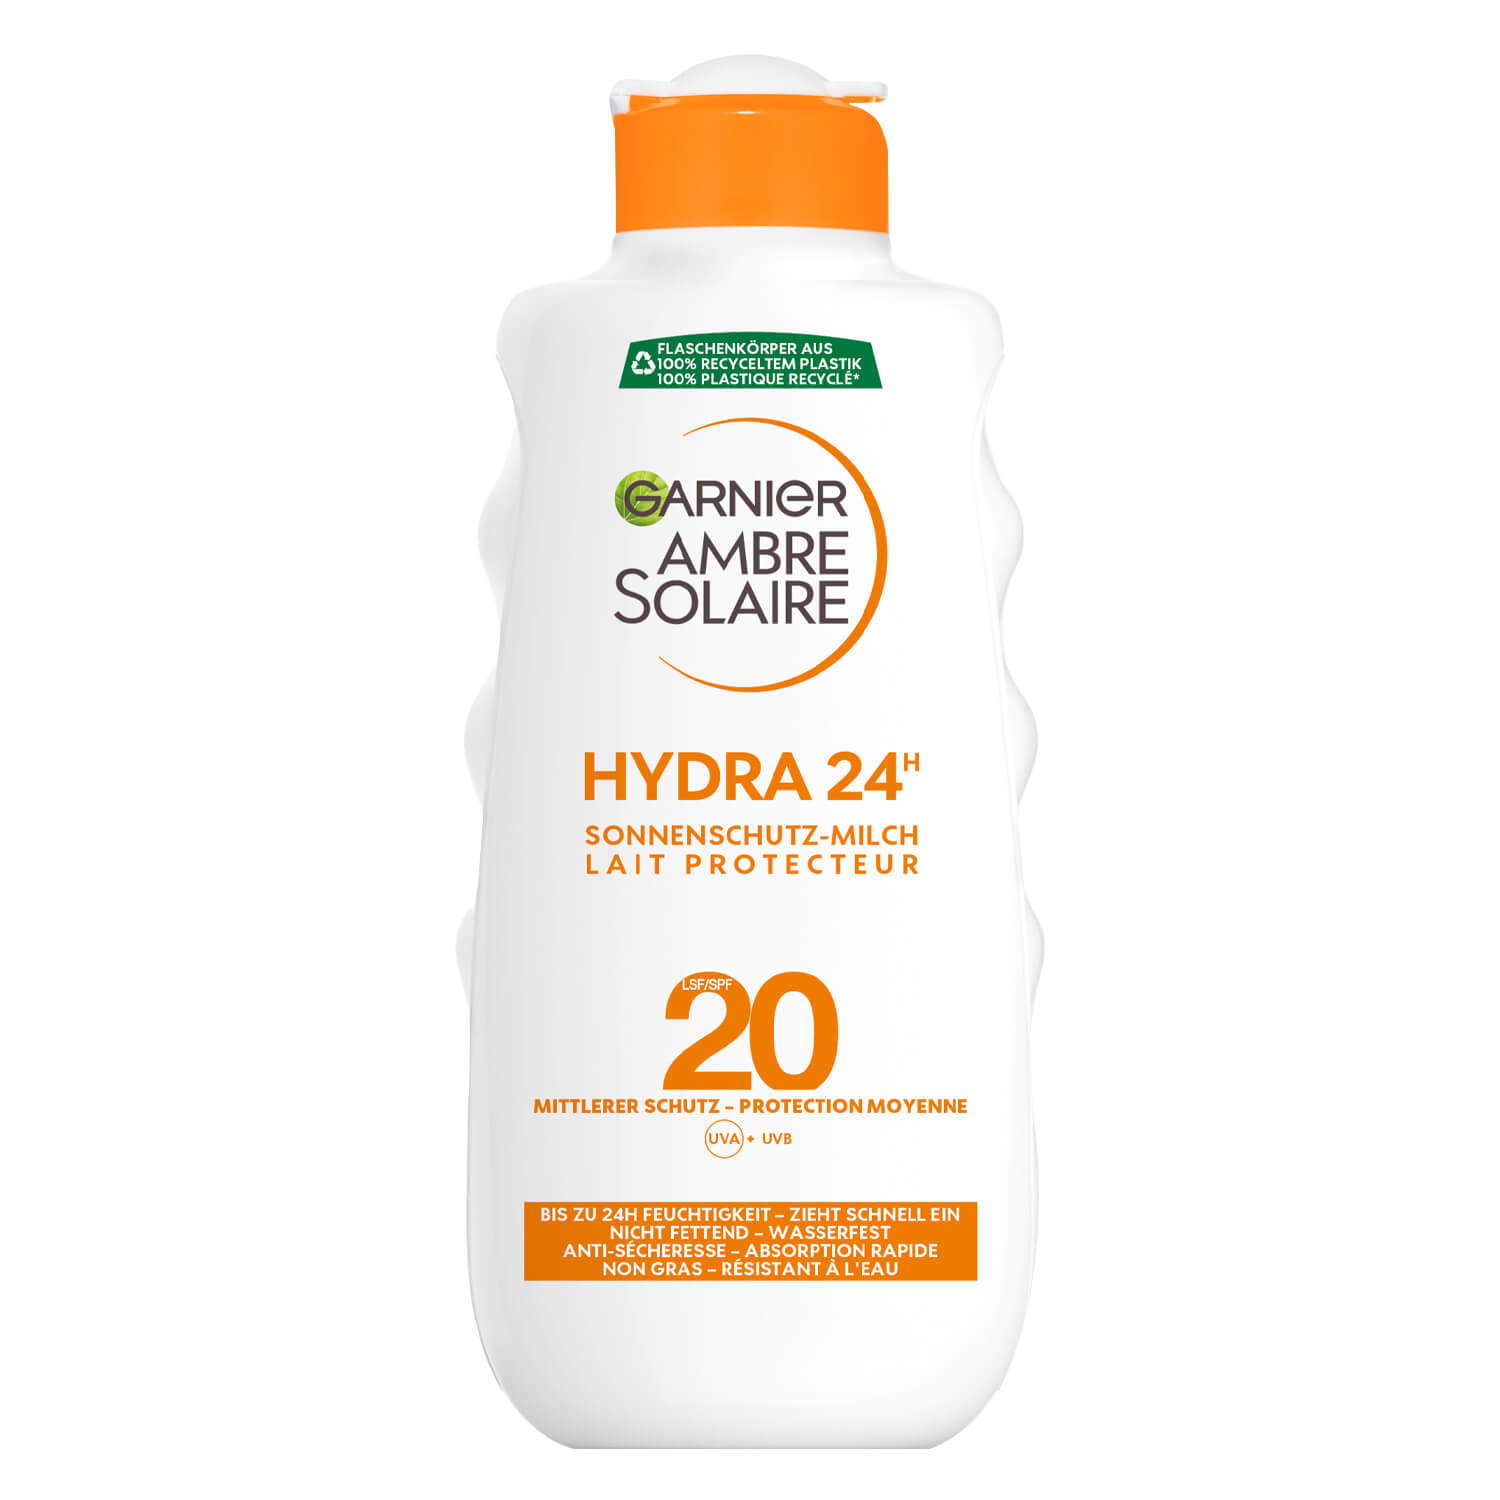 Ambre Solaire - Sonnenschutz-Milch LSF20 Hydra 24h